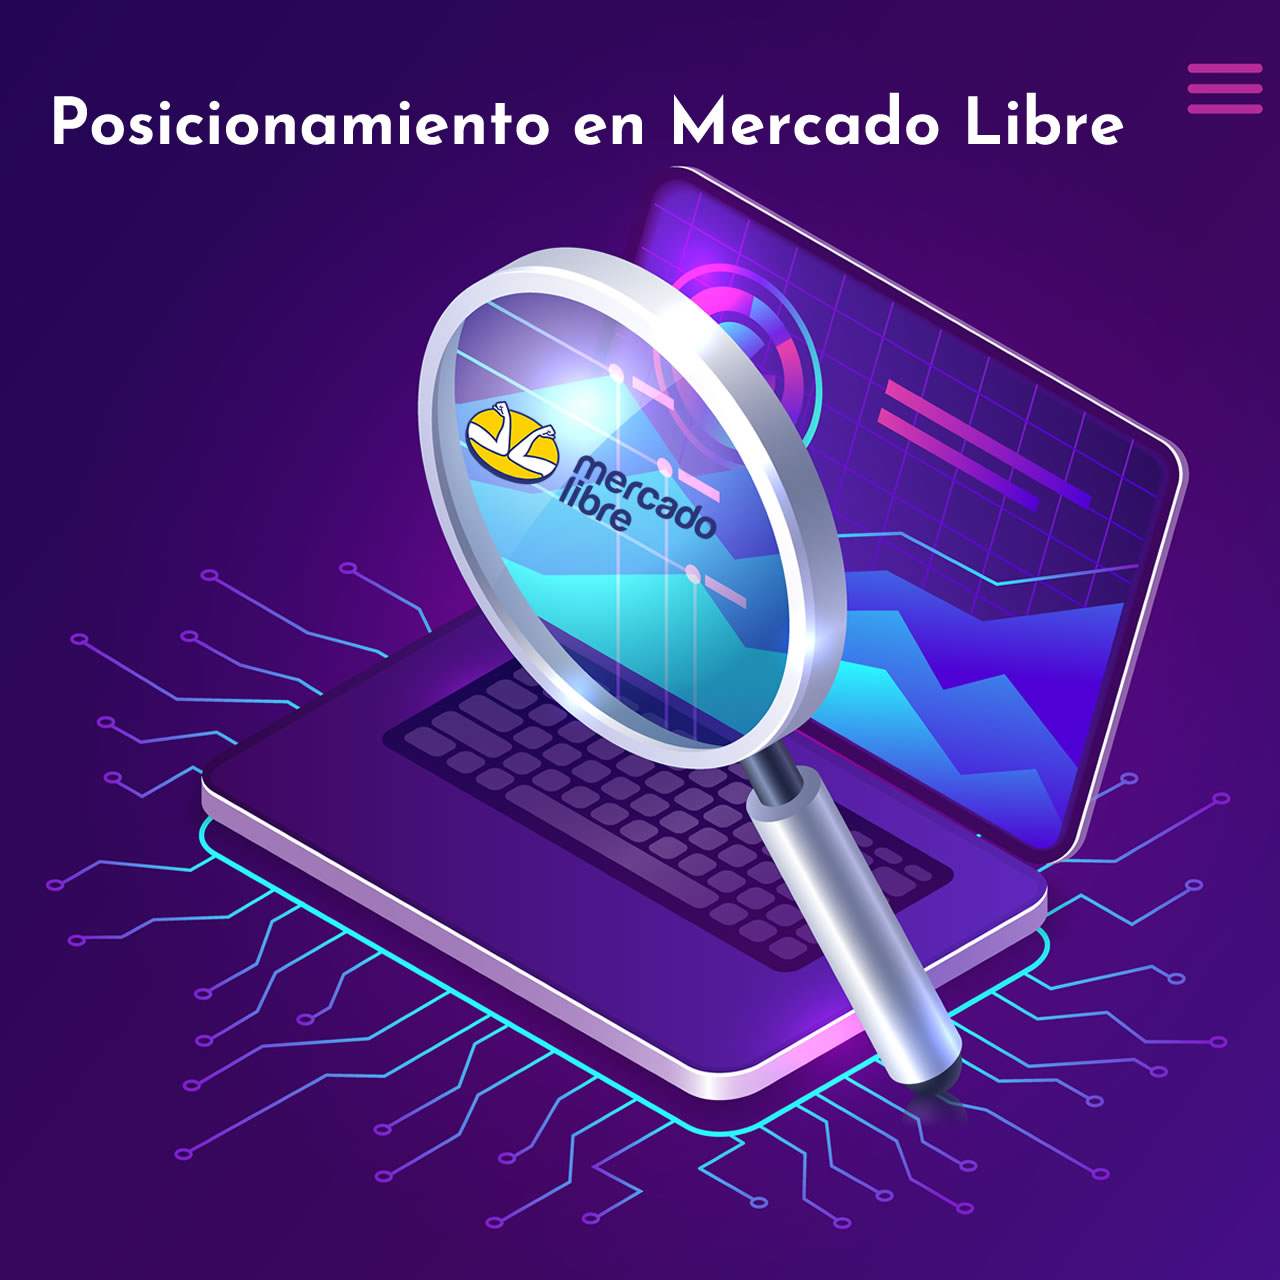 Posicionamiento en Mercado Libre: ¿Tus avisos en la plataforma no se ven? A menudo ocurre que los avisos que publicás no se encuentran - Web Tienda Online Uruguay